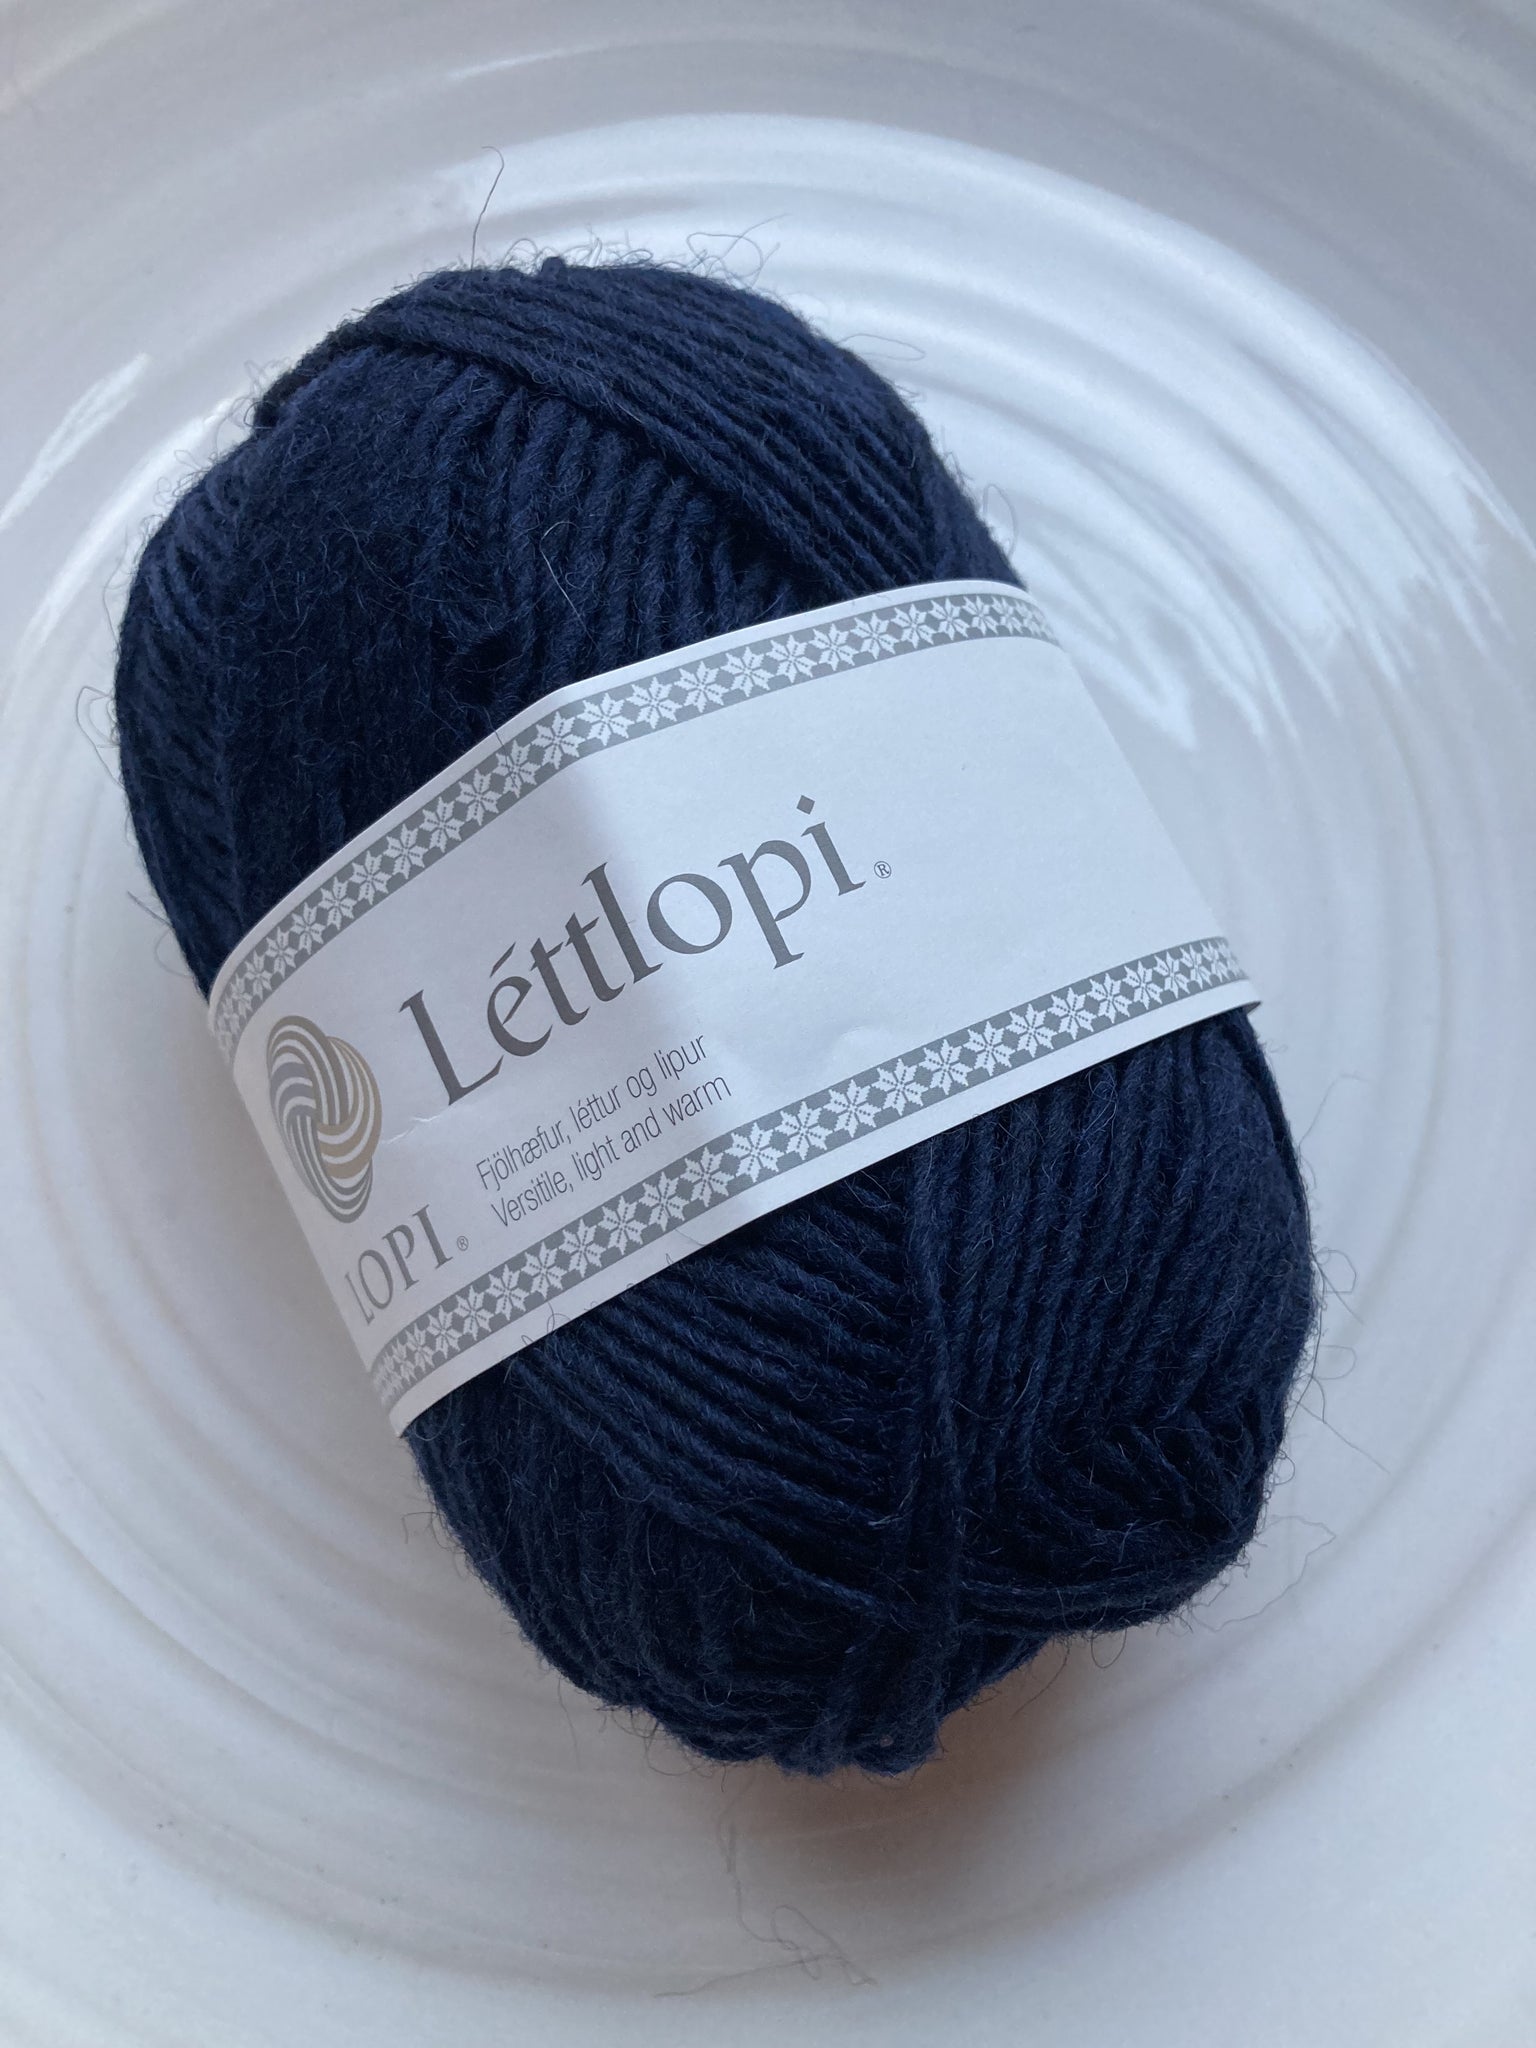 Lettlopi - 9420 - Navy Blue